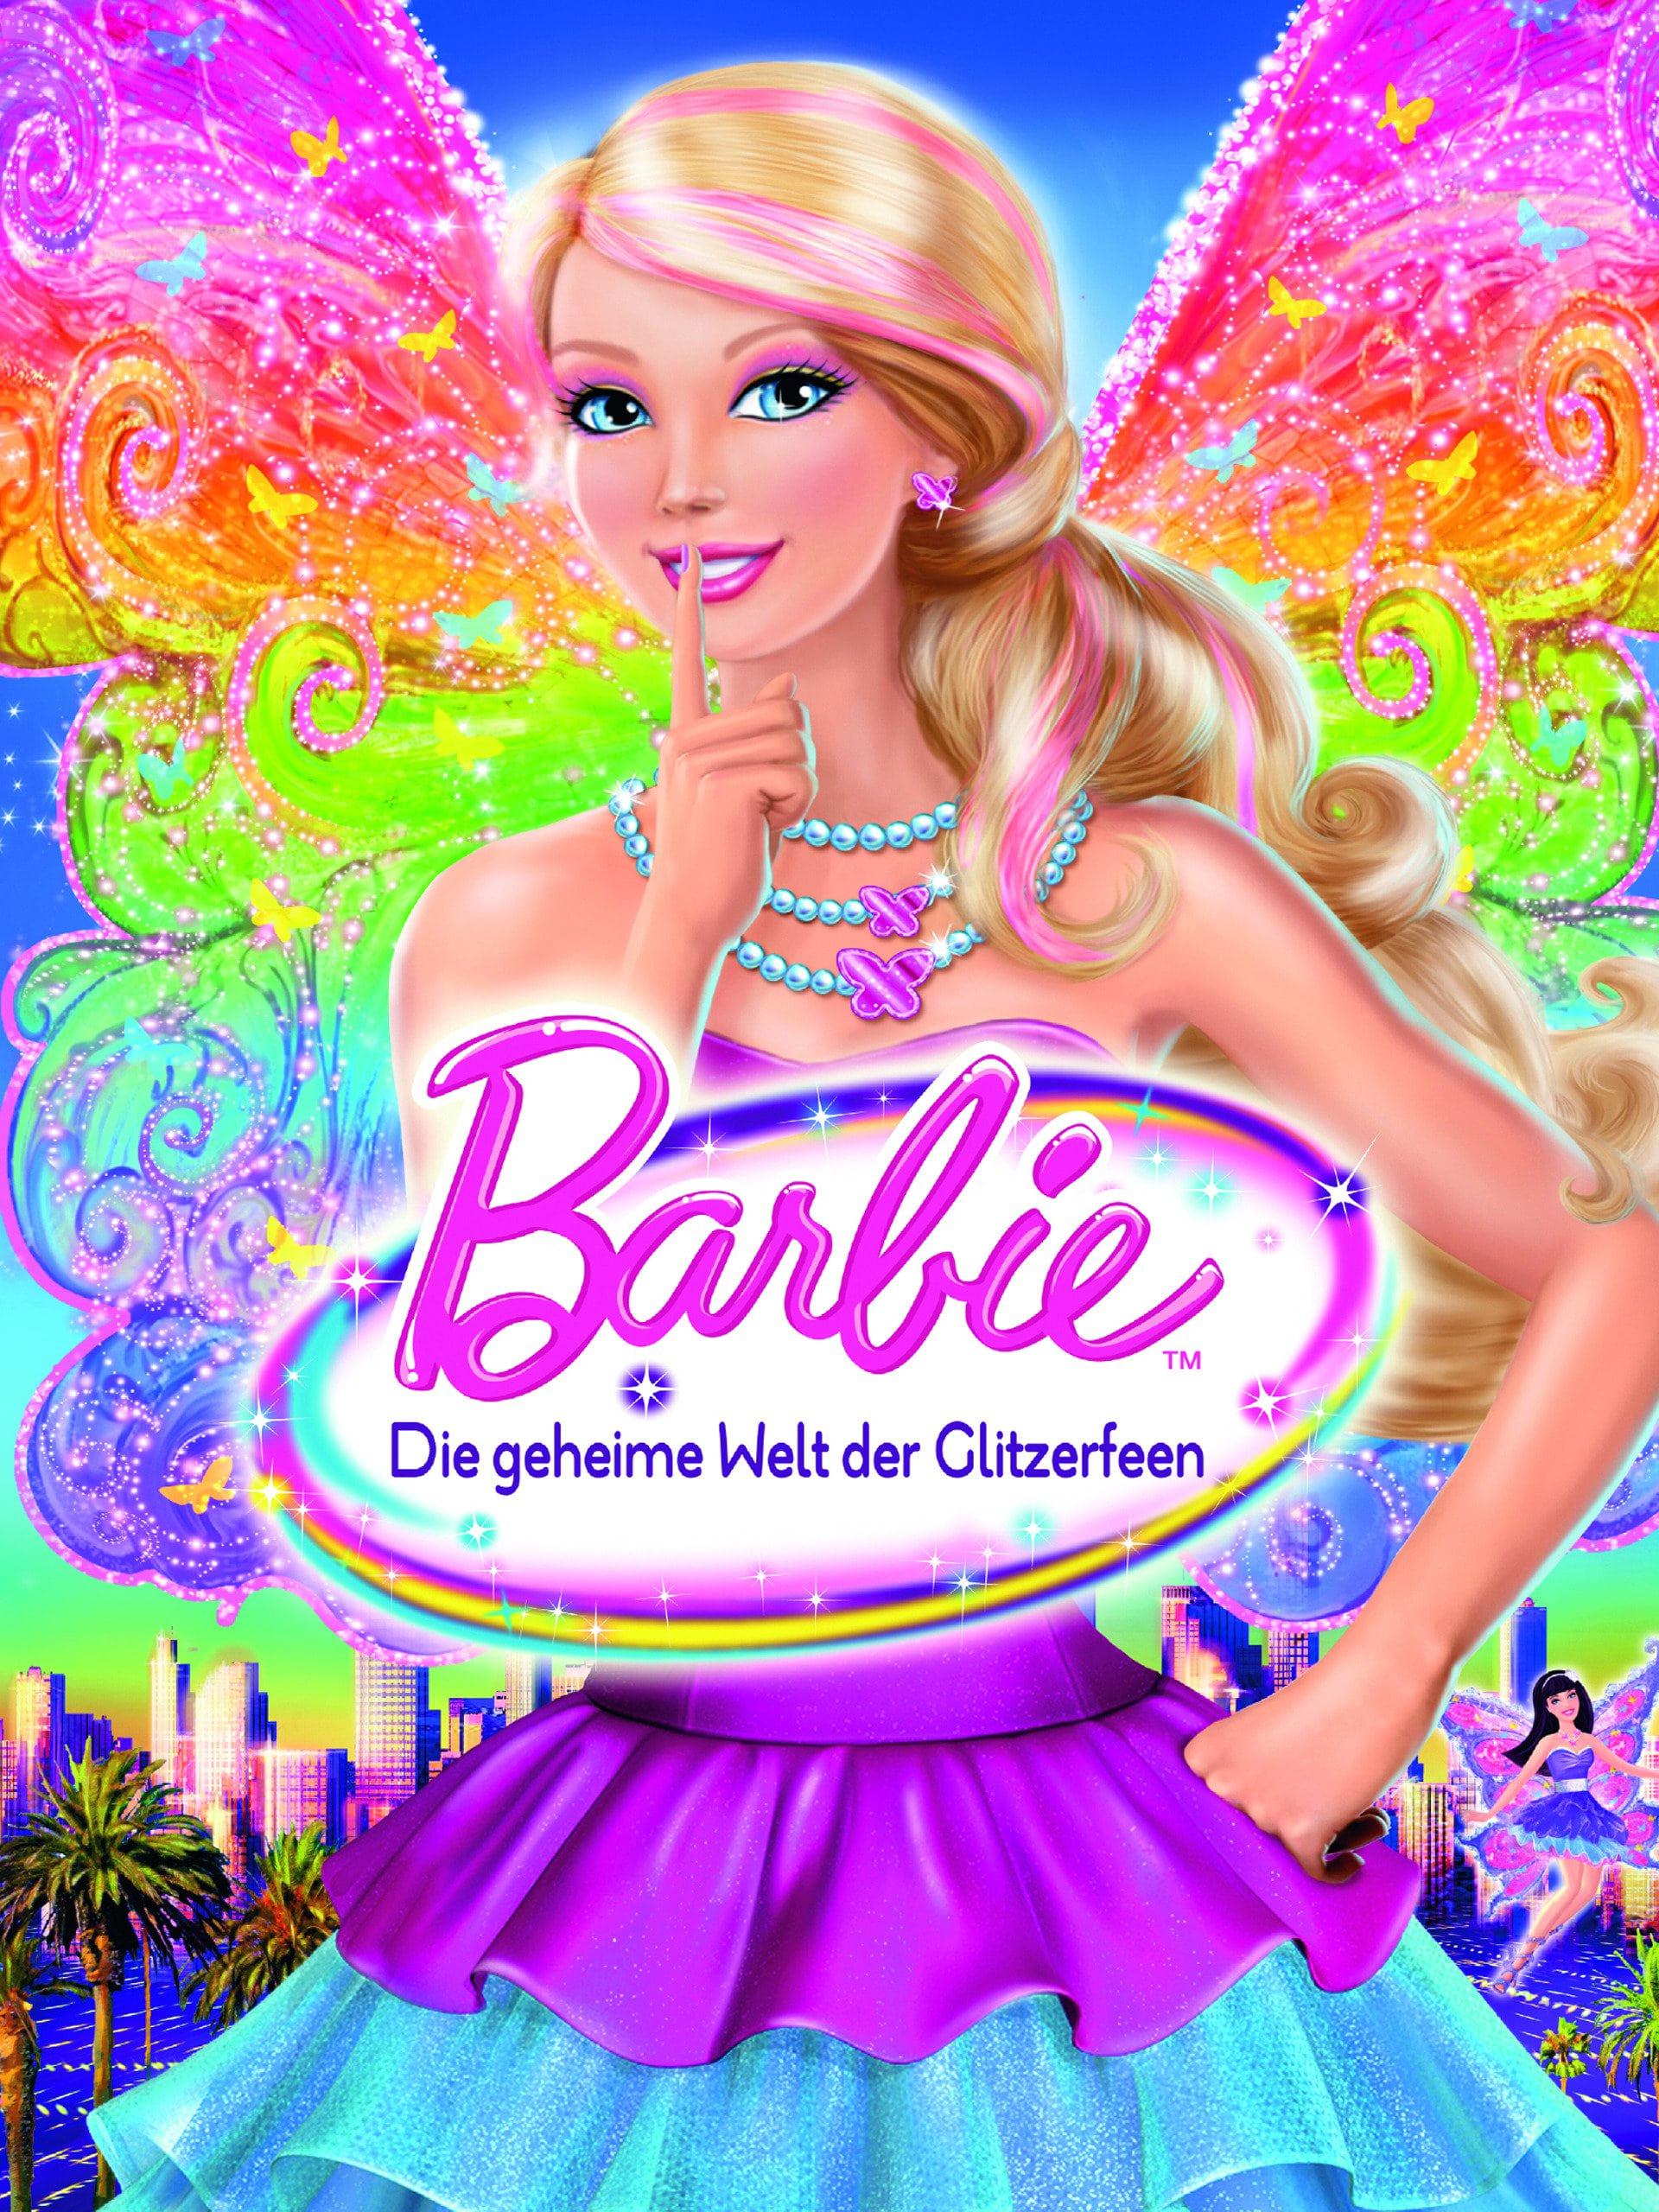 Barbie - Die geheime Welt der Glitzerfeen poster